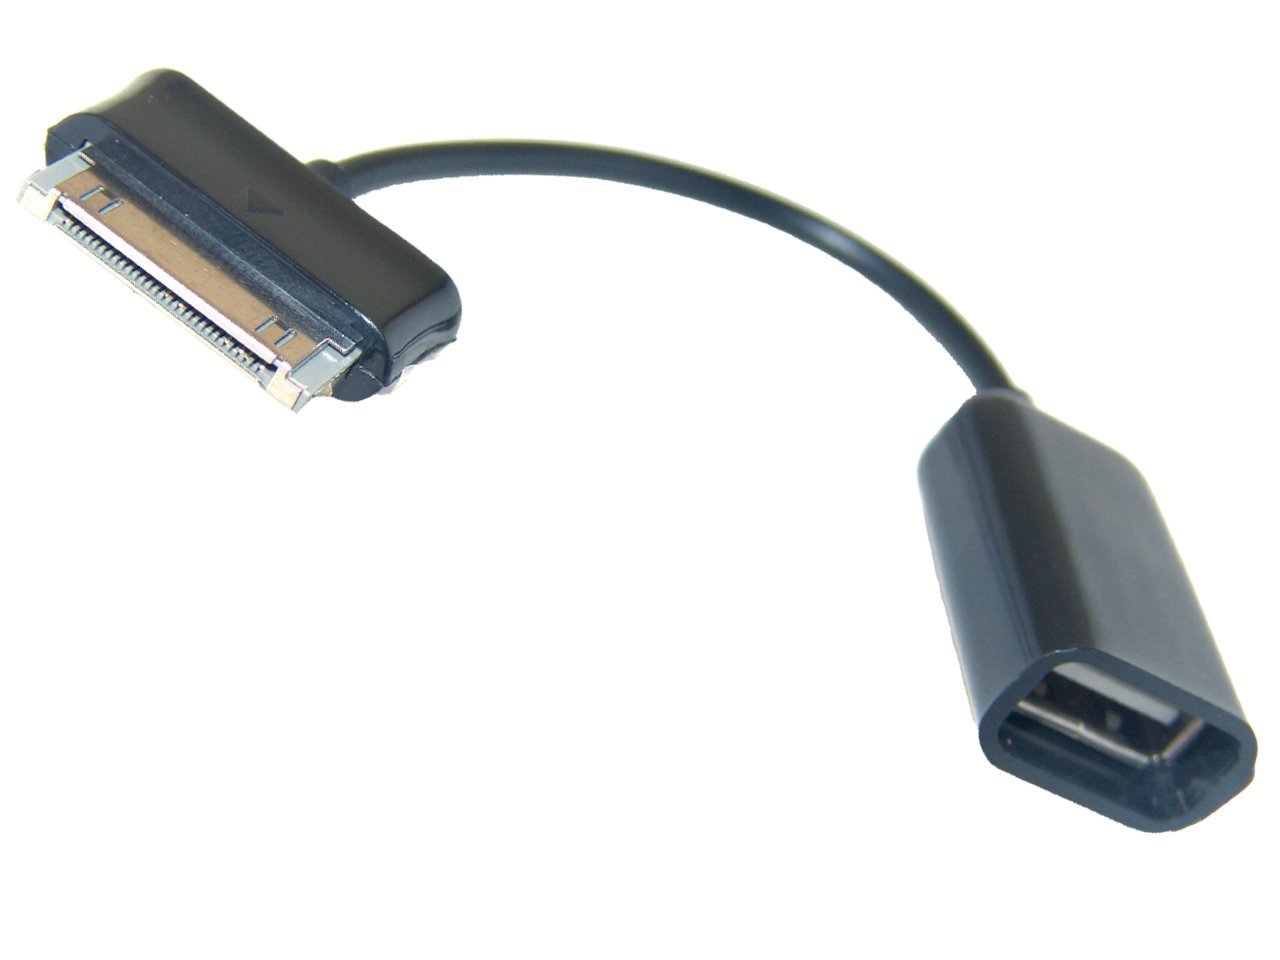 clicca su immagine per consultare dettagli, vedere altre foto e ordinare OTG-USB HOST da Samsung a USB